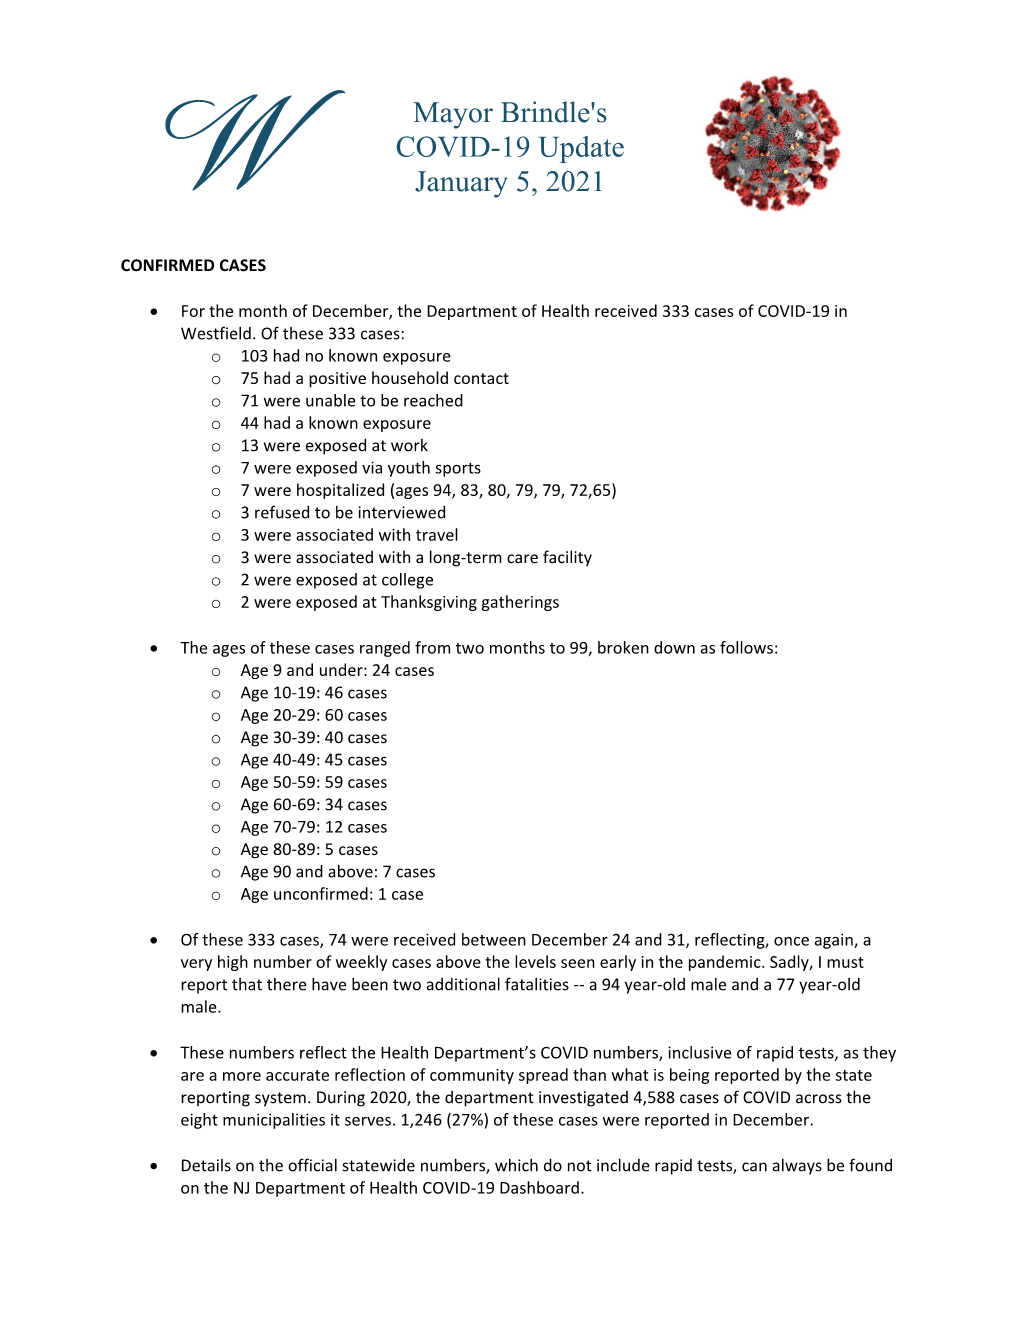 January 5, 2021 Coronavirus Update